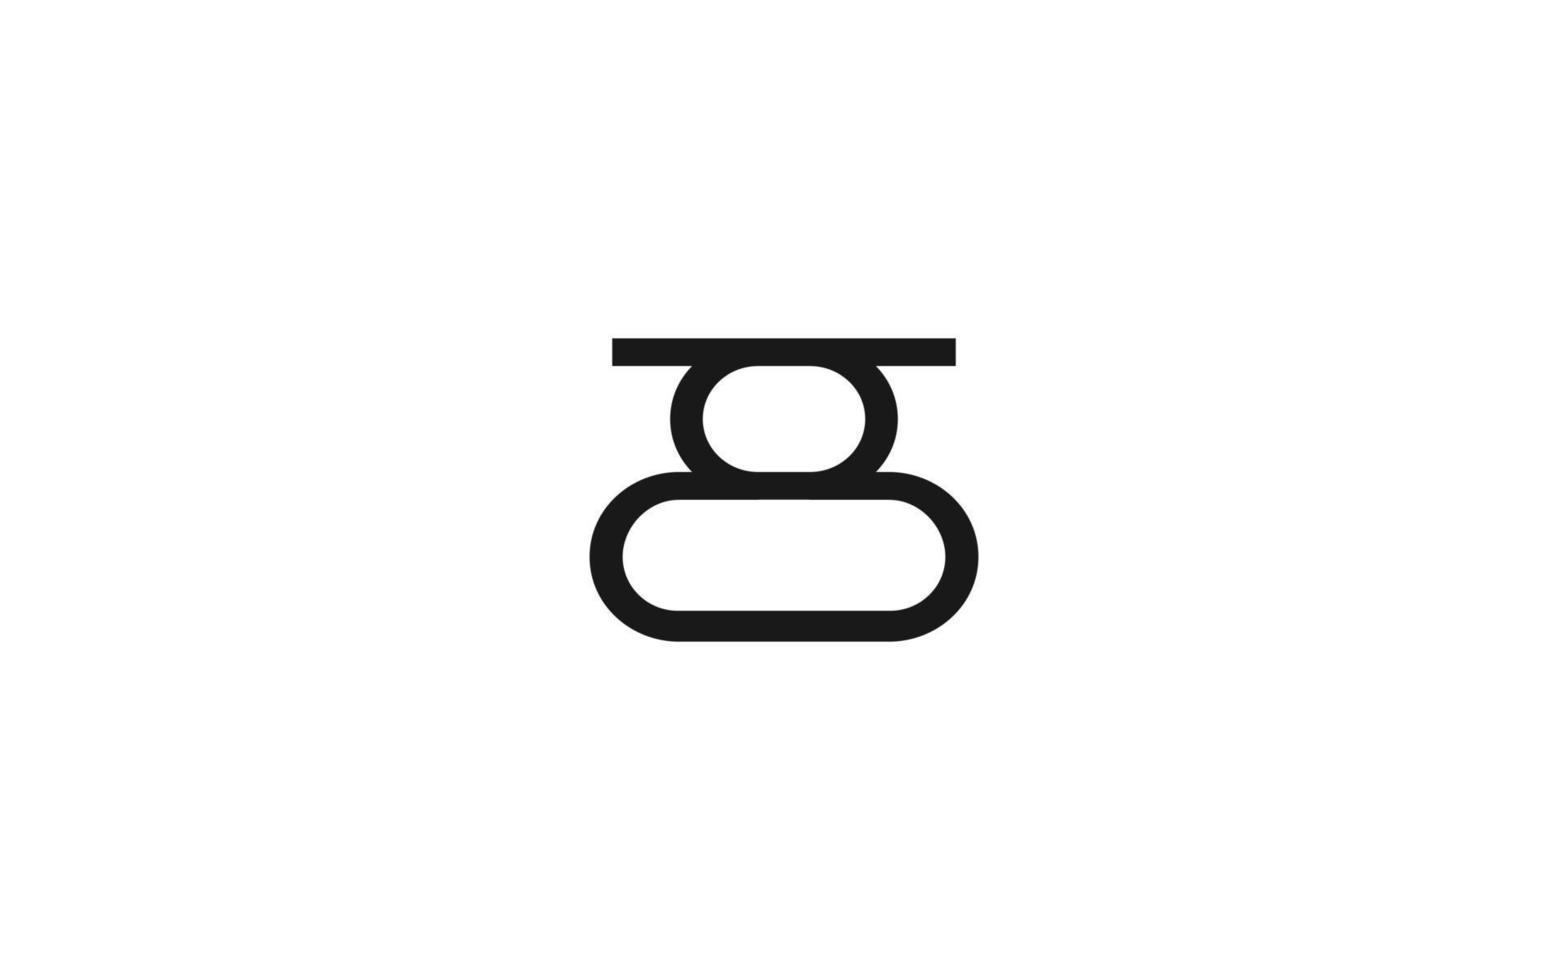 abstract symbool logo voor branding bedrijf. concept sjabloon vector illustratie voor uw merk.